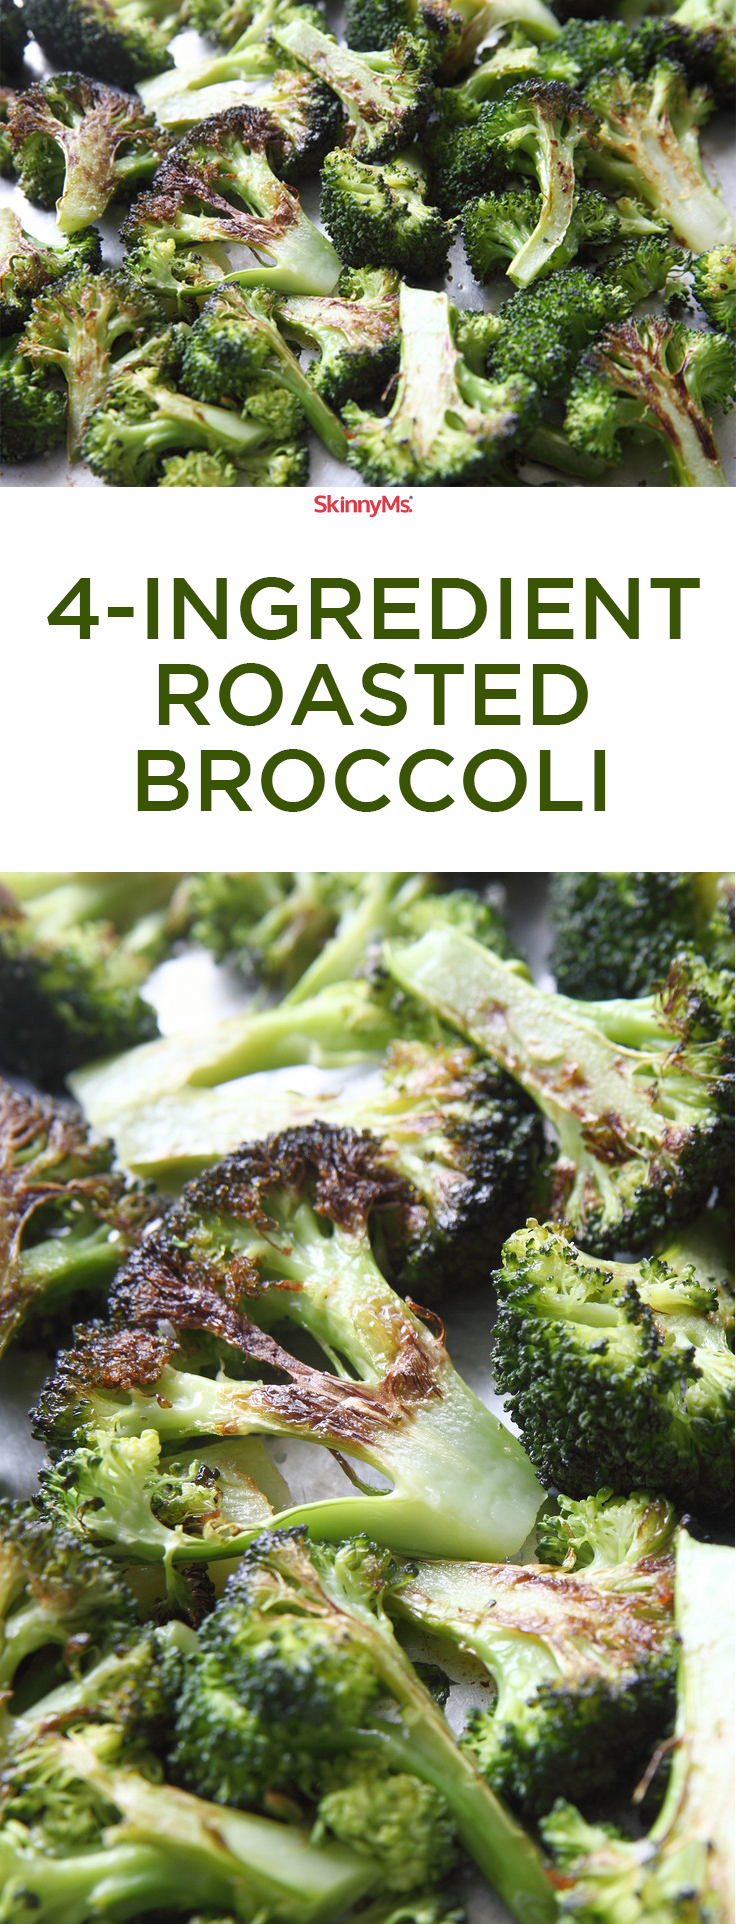 21 yummy broccoli recipes
 ideas